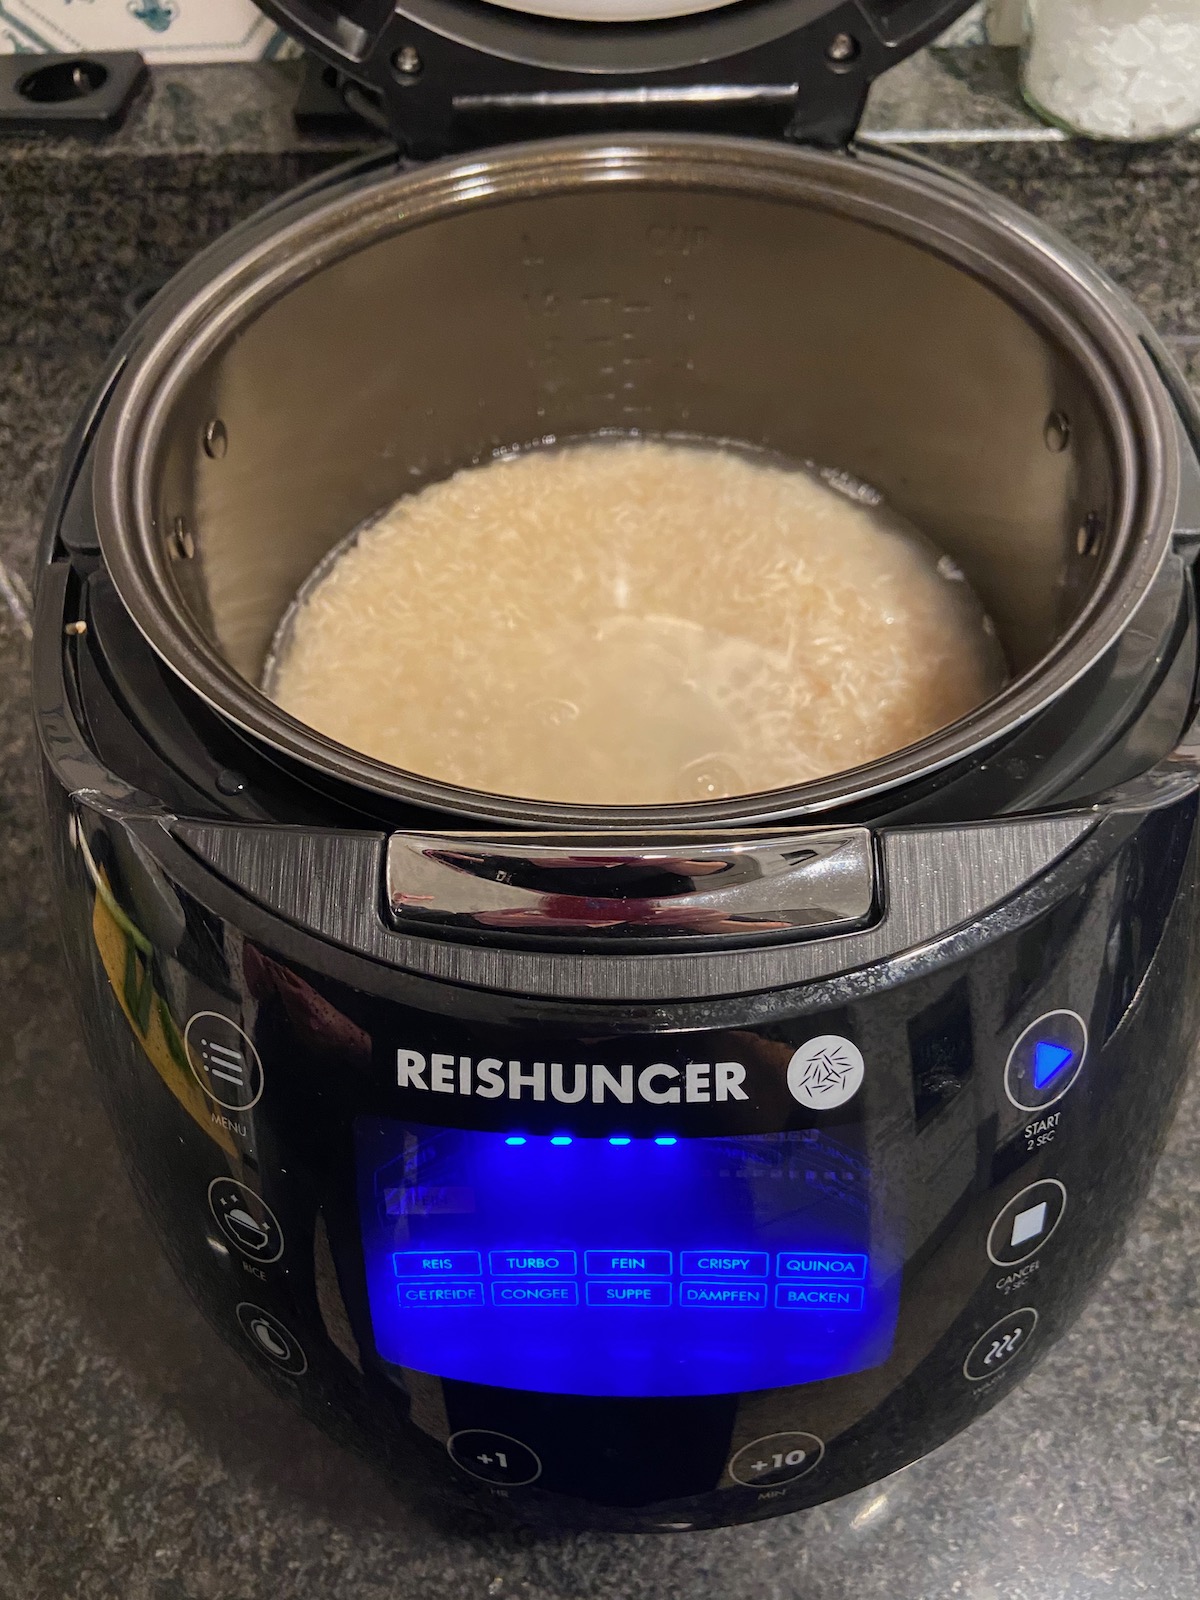 Reishunger Digitaler Reiskocher